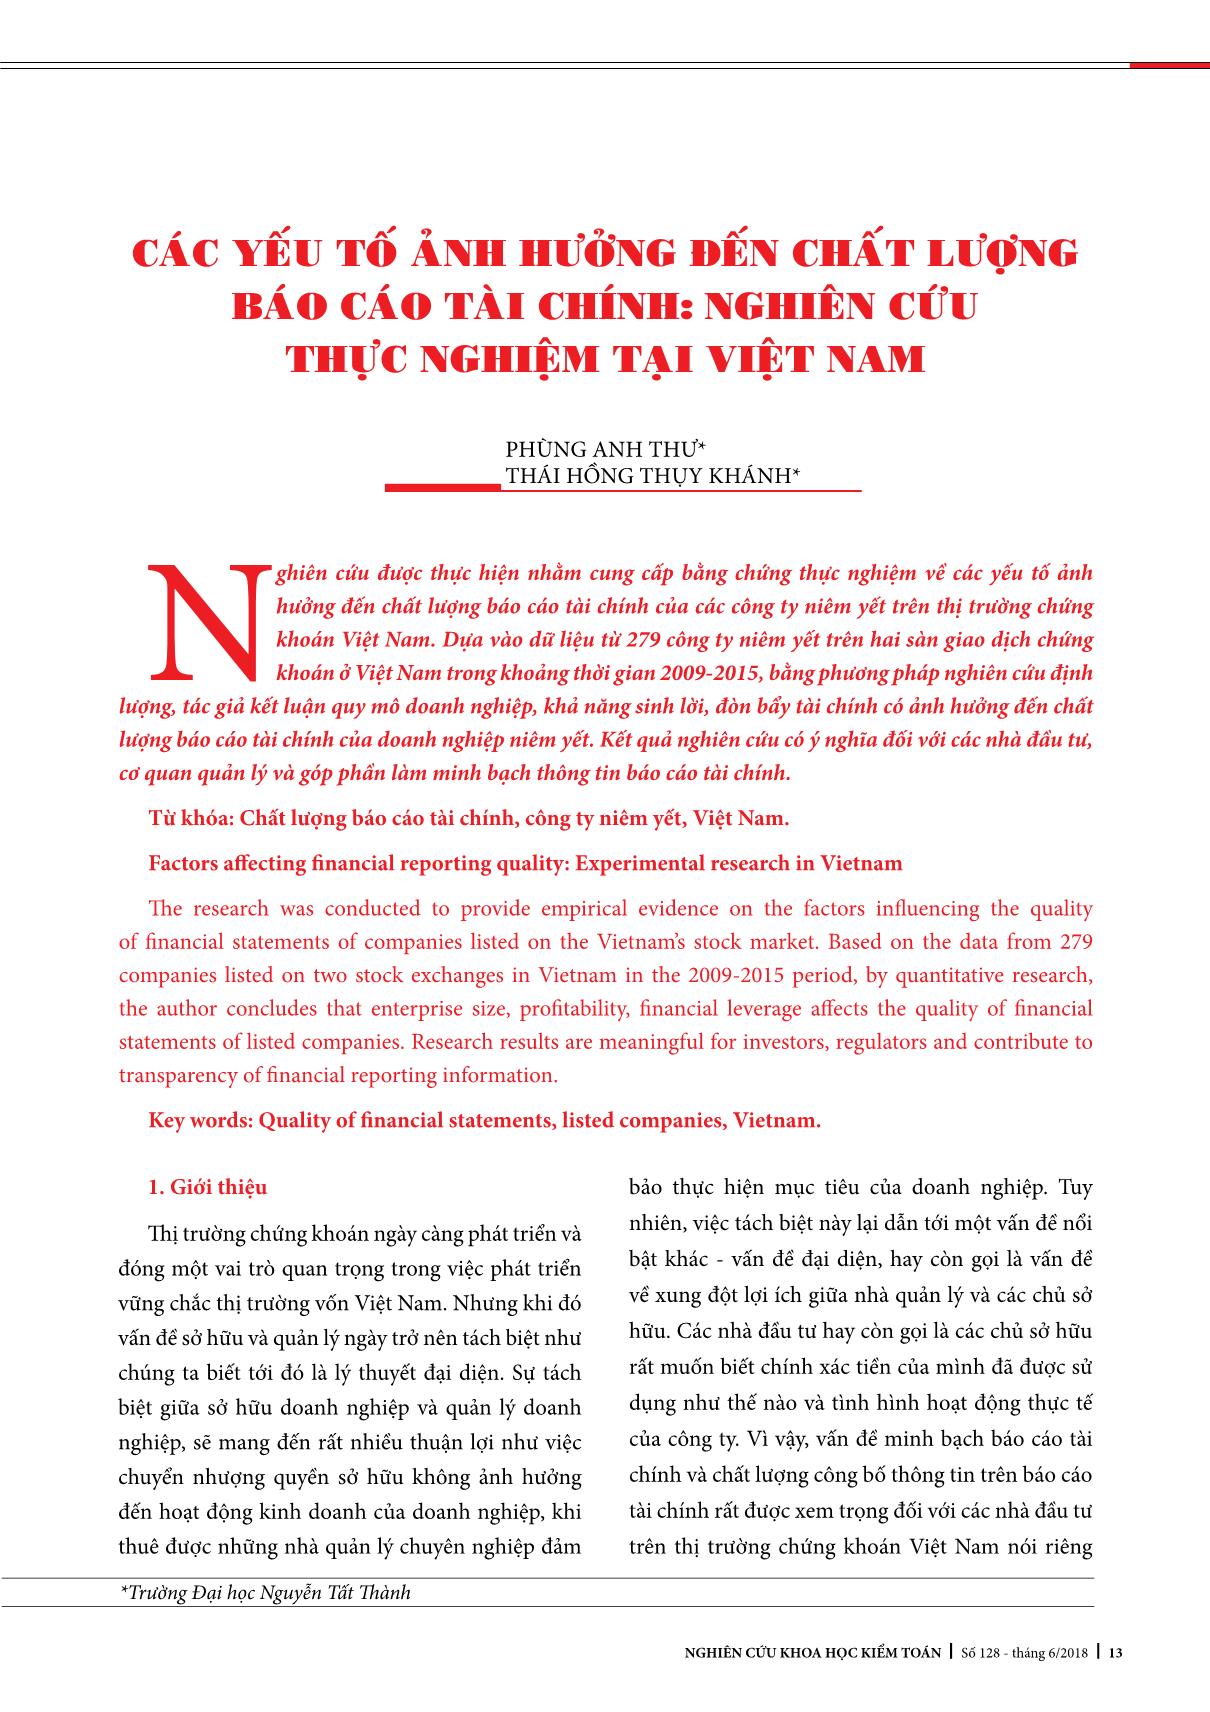 Các yếu tố ảnh hưởng đến chất lượng Báo cáo tài chính: Nghiên cứu thực nghiệm tại Việt Nam trang 1